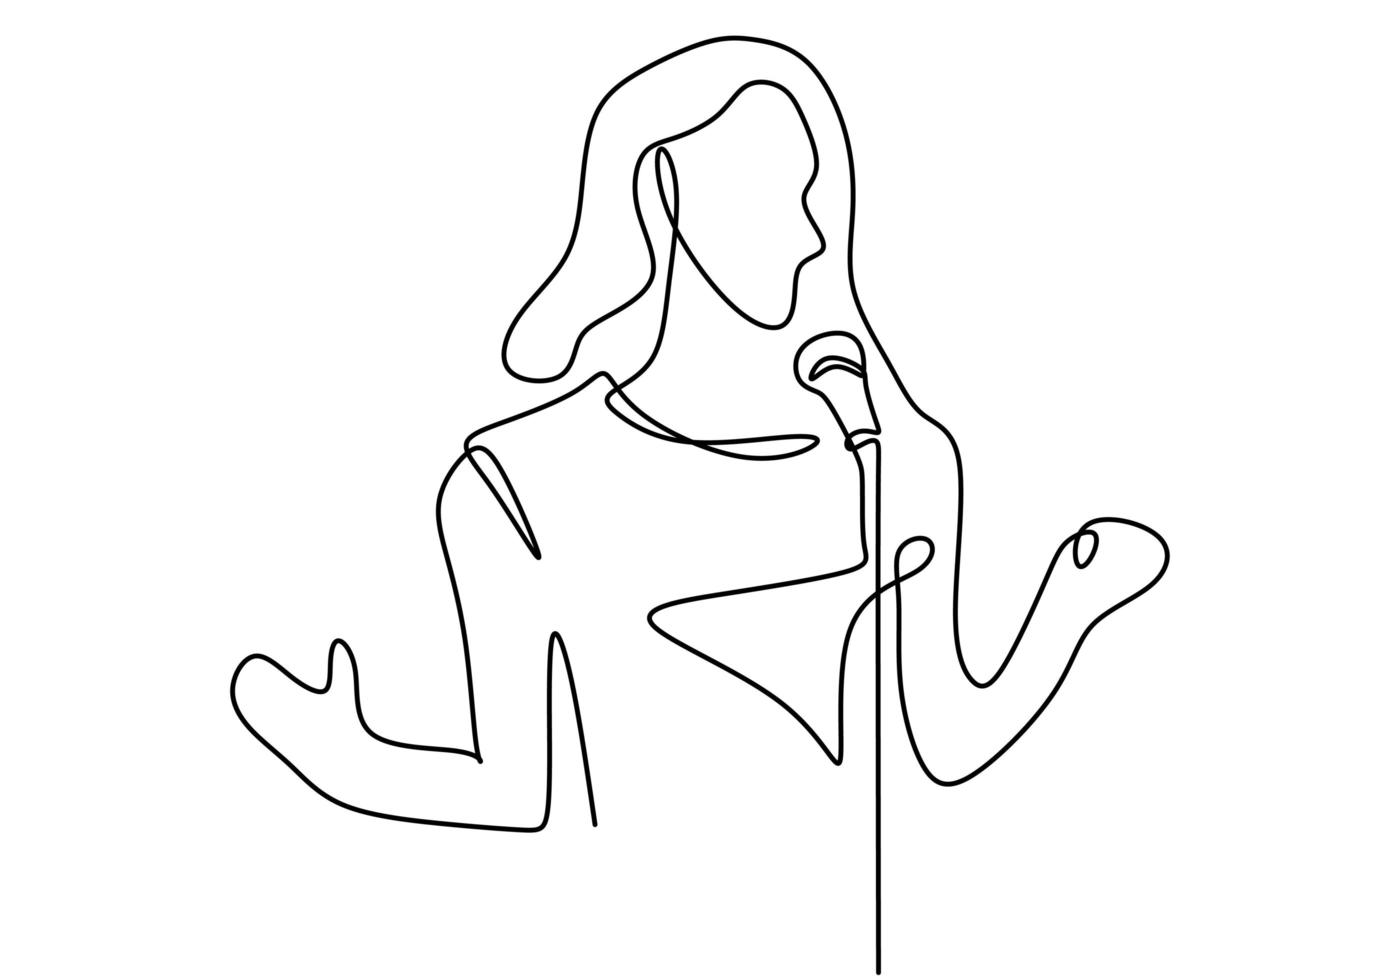 een zangeres treedt op met haar lied. vermaak het publiek met haar stem. romantisch lied zingen. muzikant kunstenaar prestatie concept enkele regel tekenen ontwerp illustratie. vector